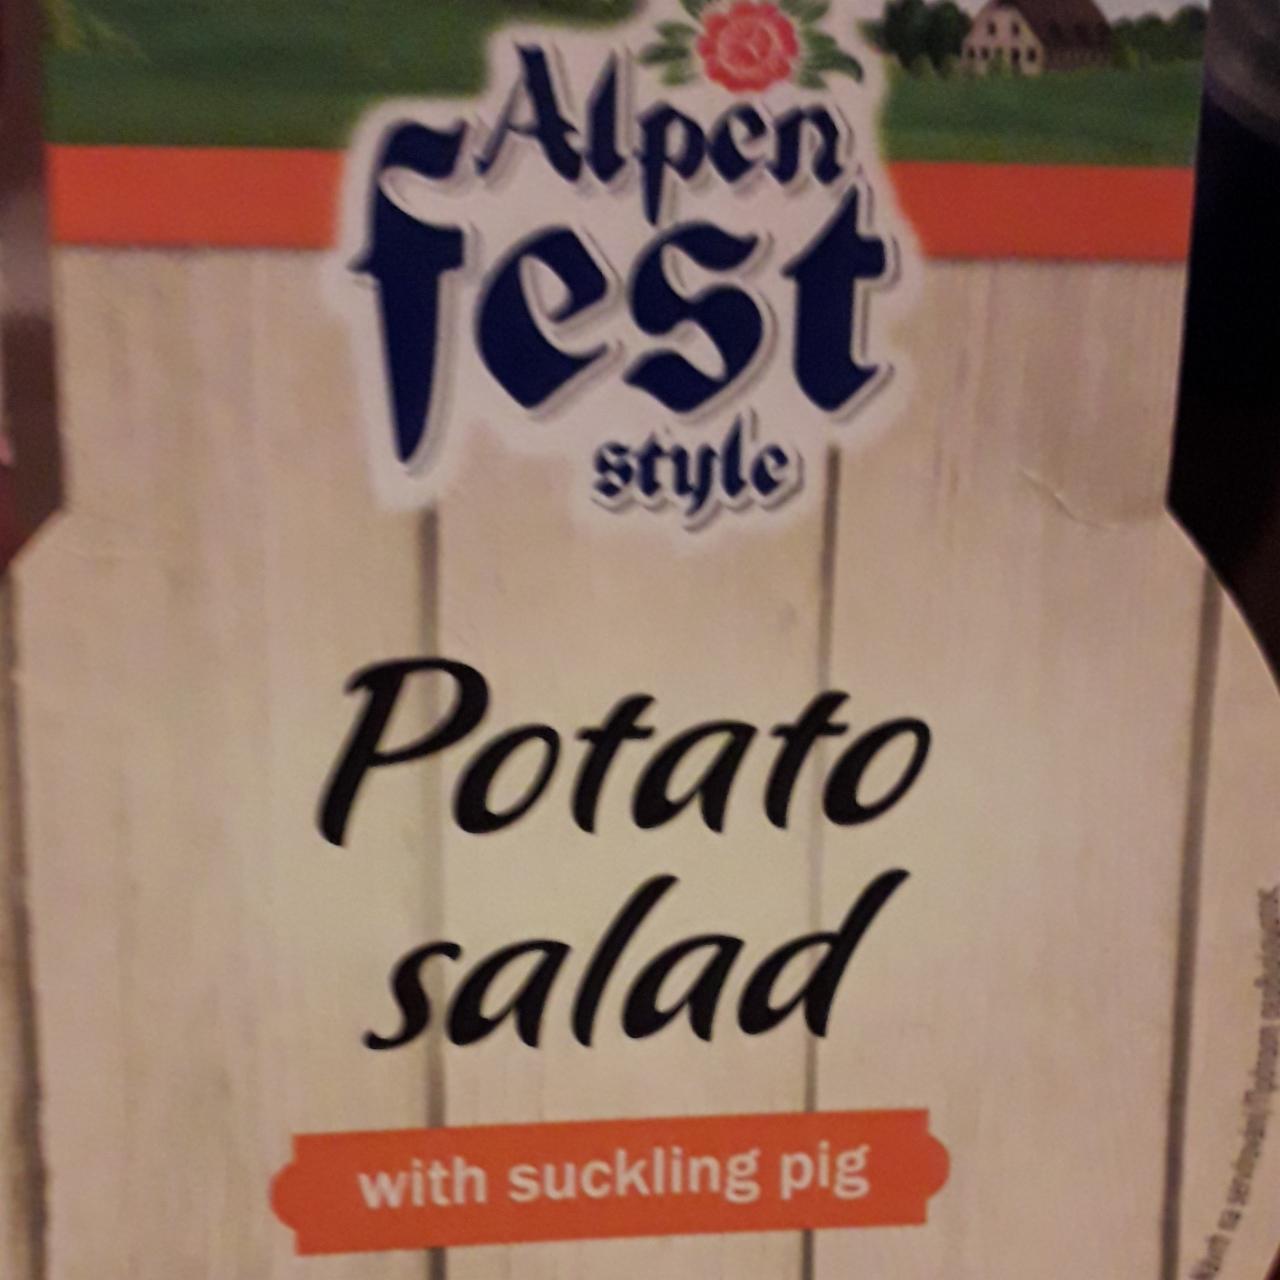 Fotografie - Potato salad with suckling pig Alpen fest style